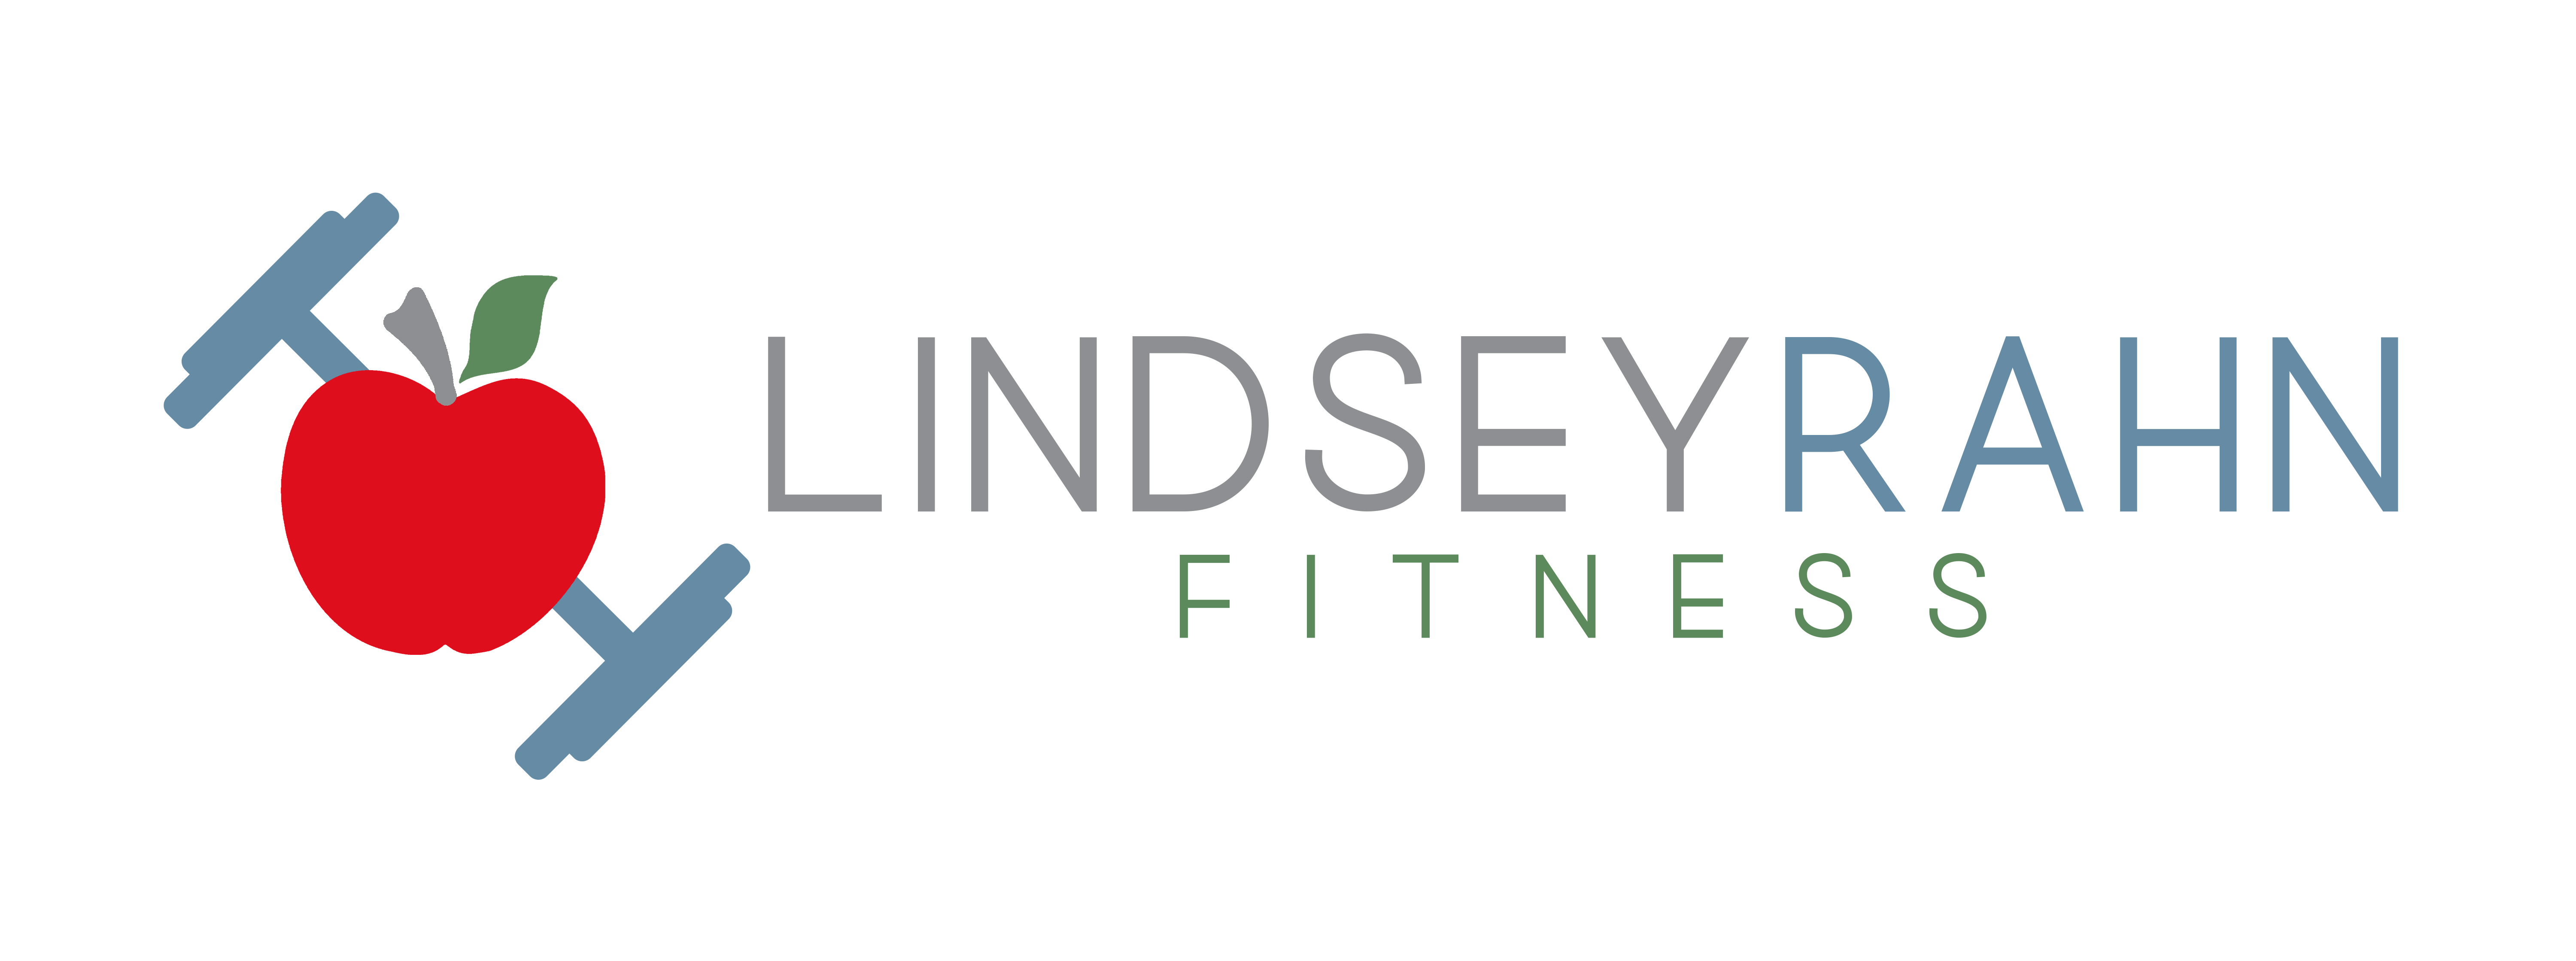 Lindsey Rahn Fitness with apple dumbbell logo